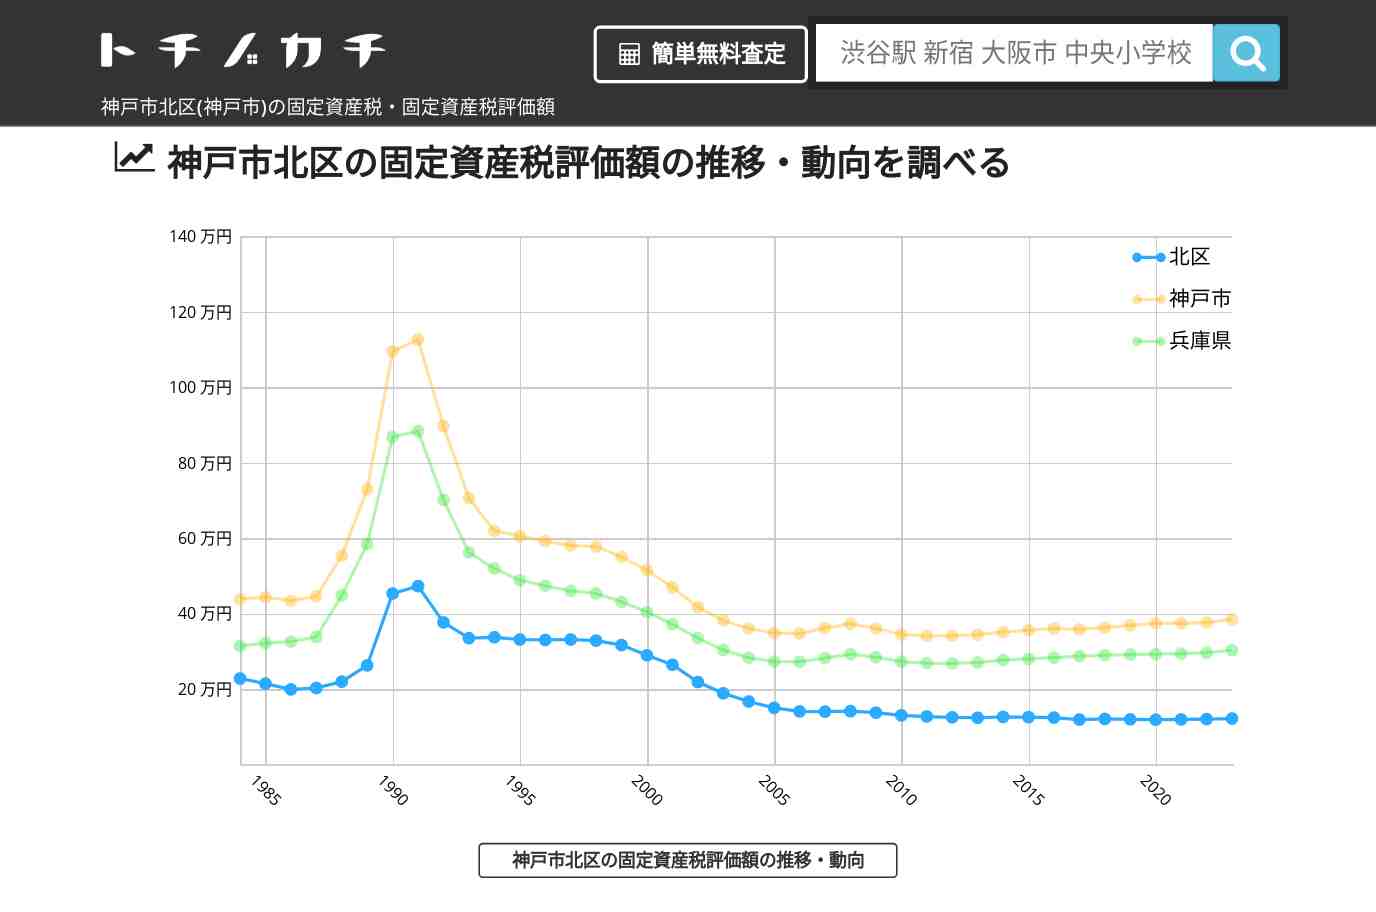 君影小学校(兵庫県 神戸市 北区)周辺の固定資産税・固定資産税評価額 | トチノカチ